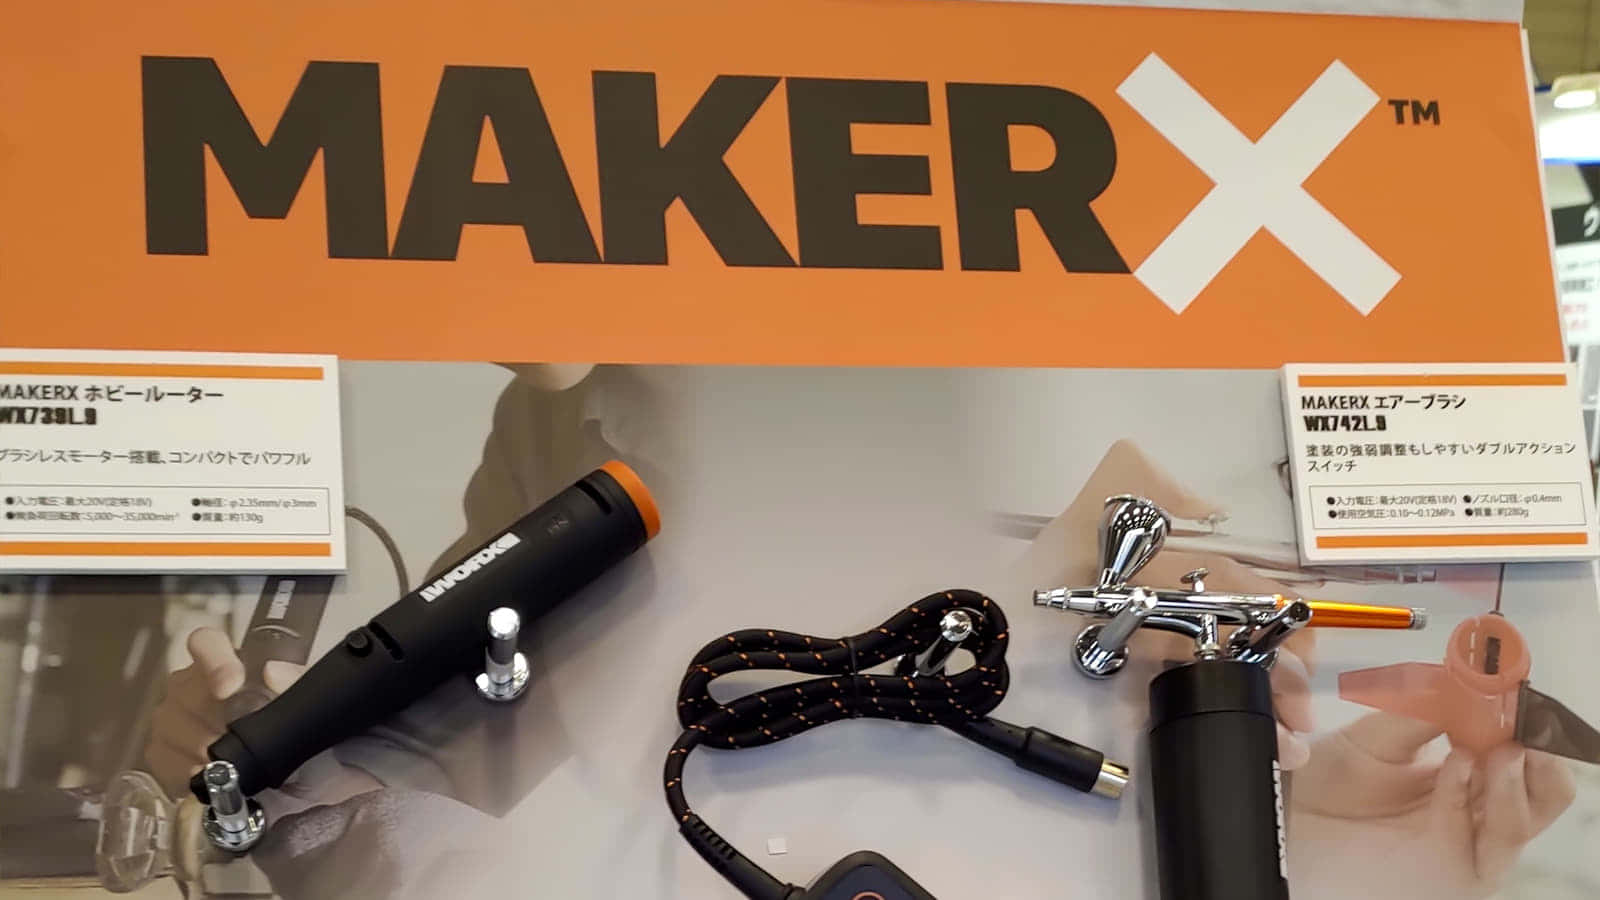 高儀 WORX MAKER Xシリーズを展示、はんだごてやエアブラシを揃える4品種